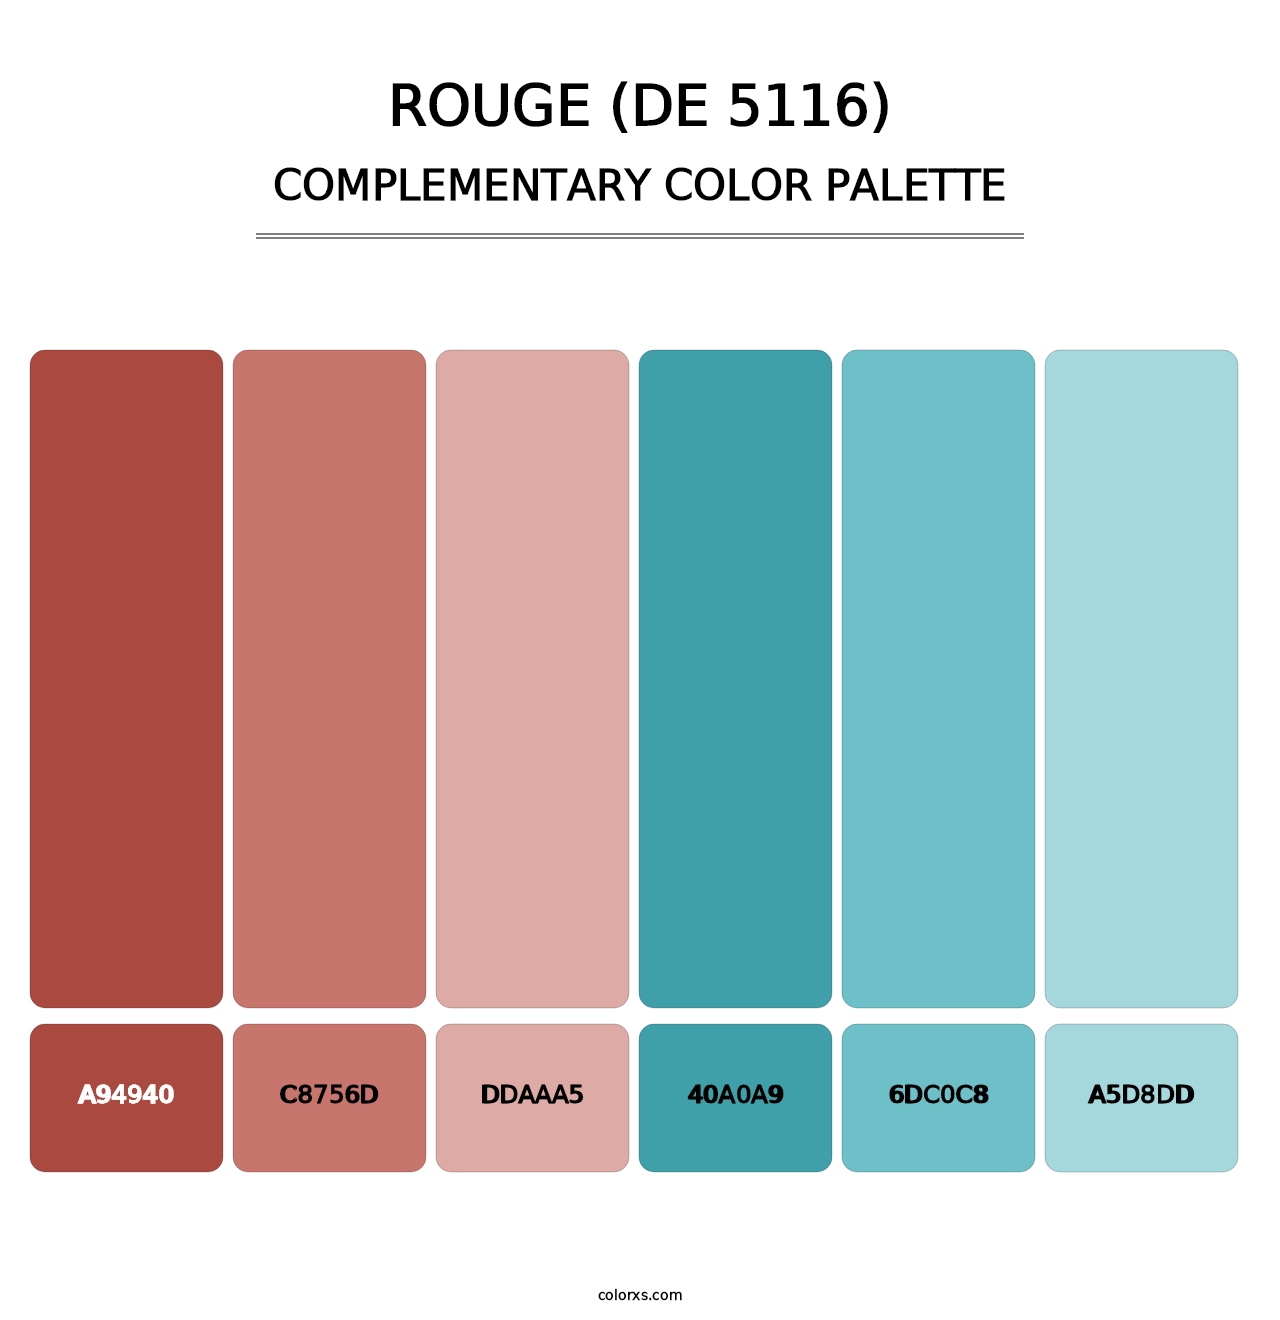 Rouge (DE 5116) - Complementary Color Palette